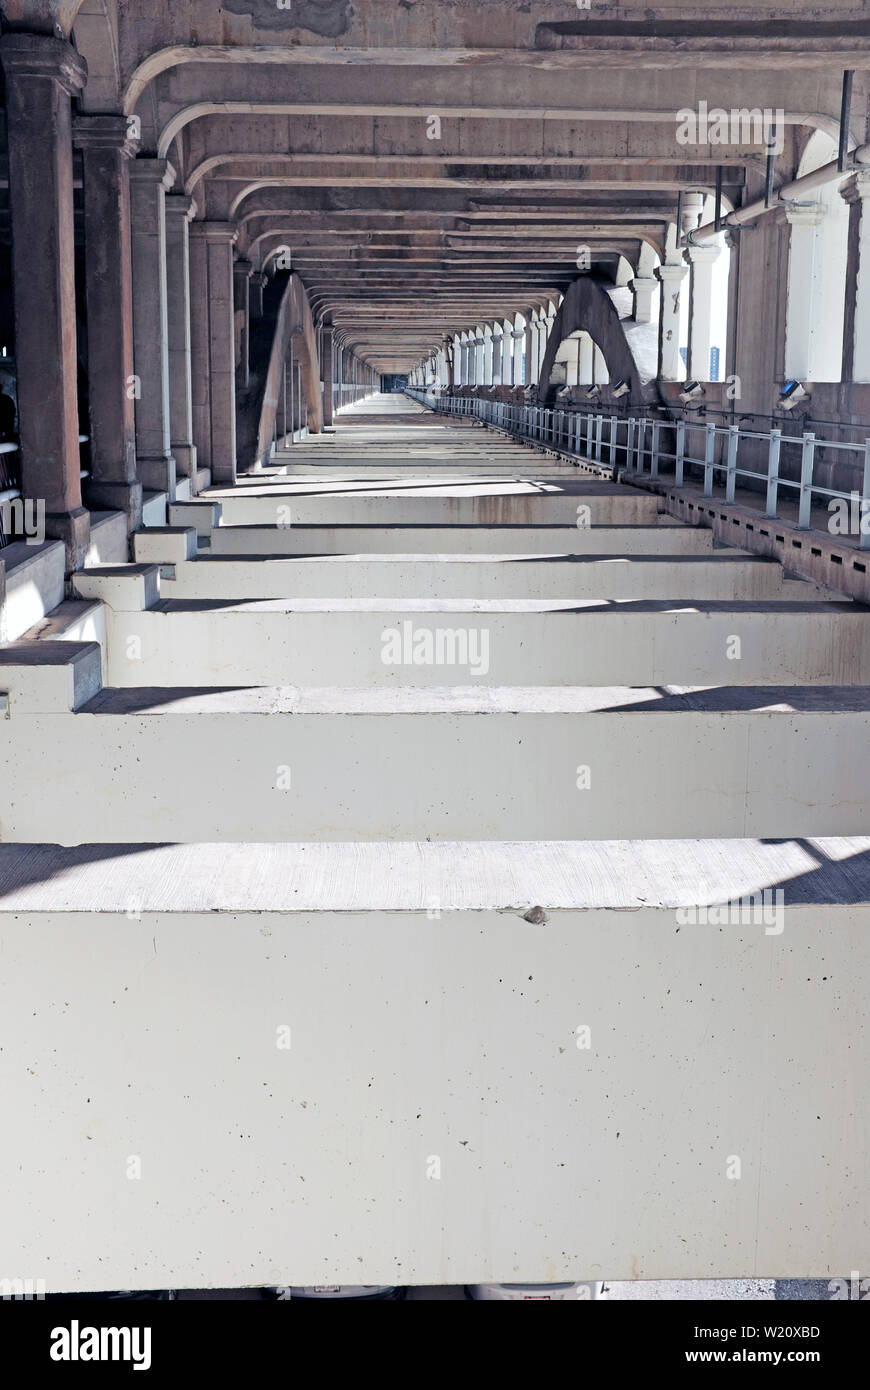 Infrastructure de pont en acier et en ciment d'un pont fixe de haut niveau, le pont commémoratif des anciens combattants, à Cleveland, Ohio, États-Unis Banque D'Images